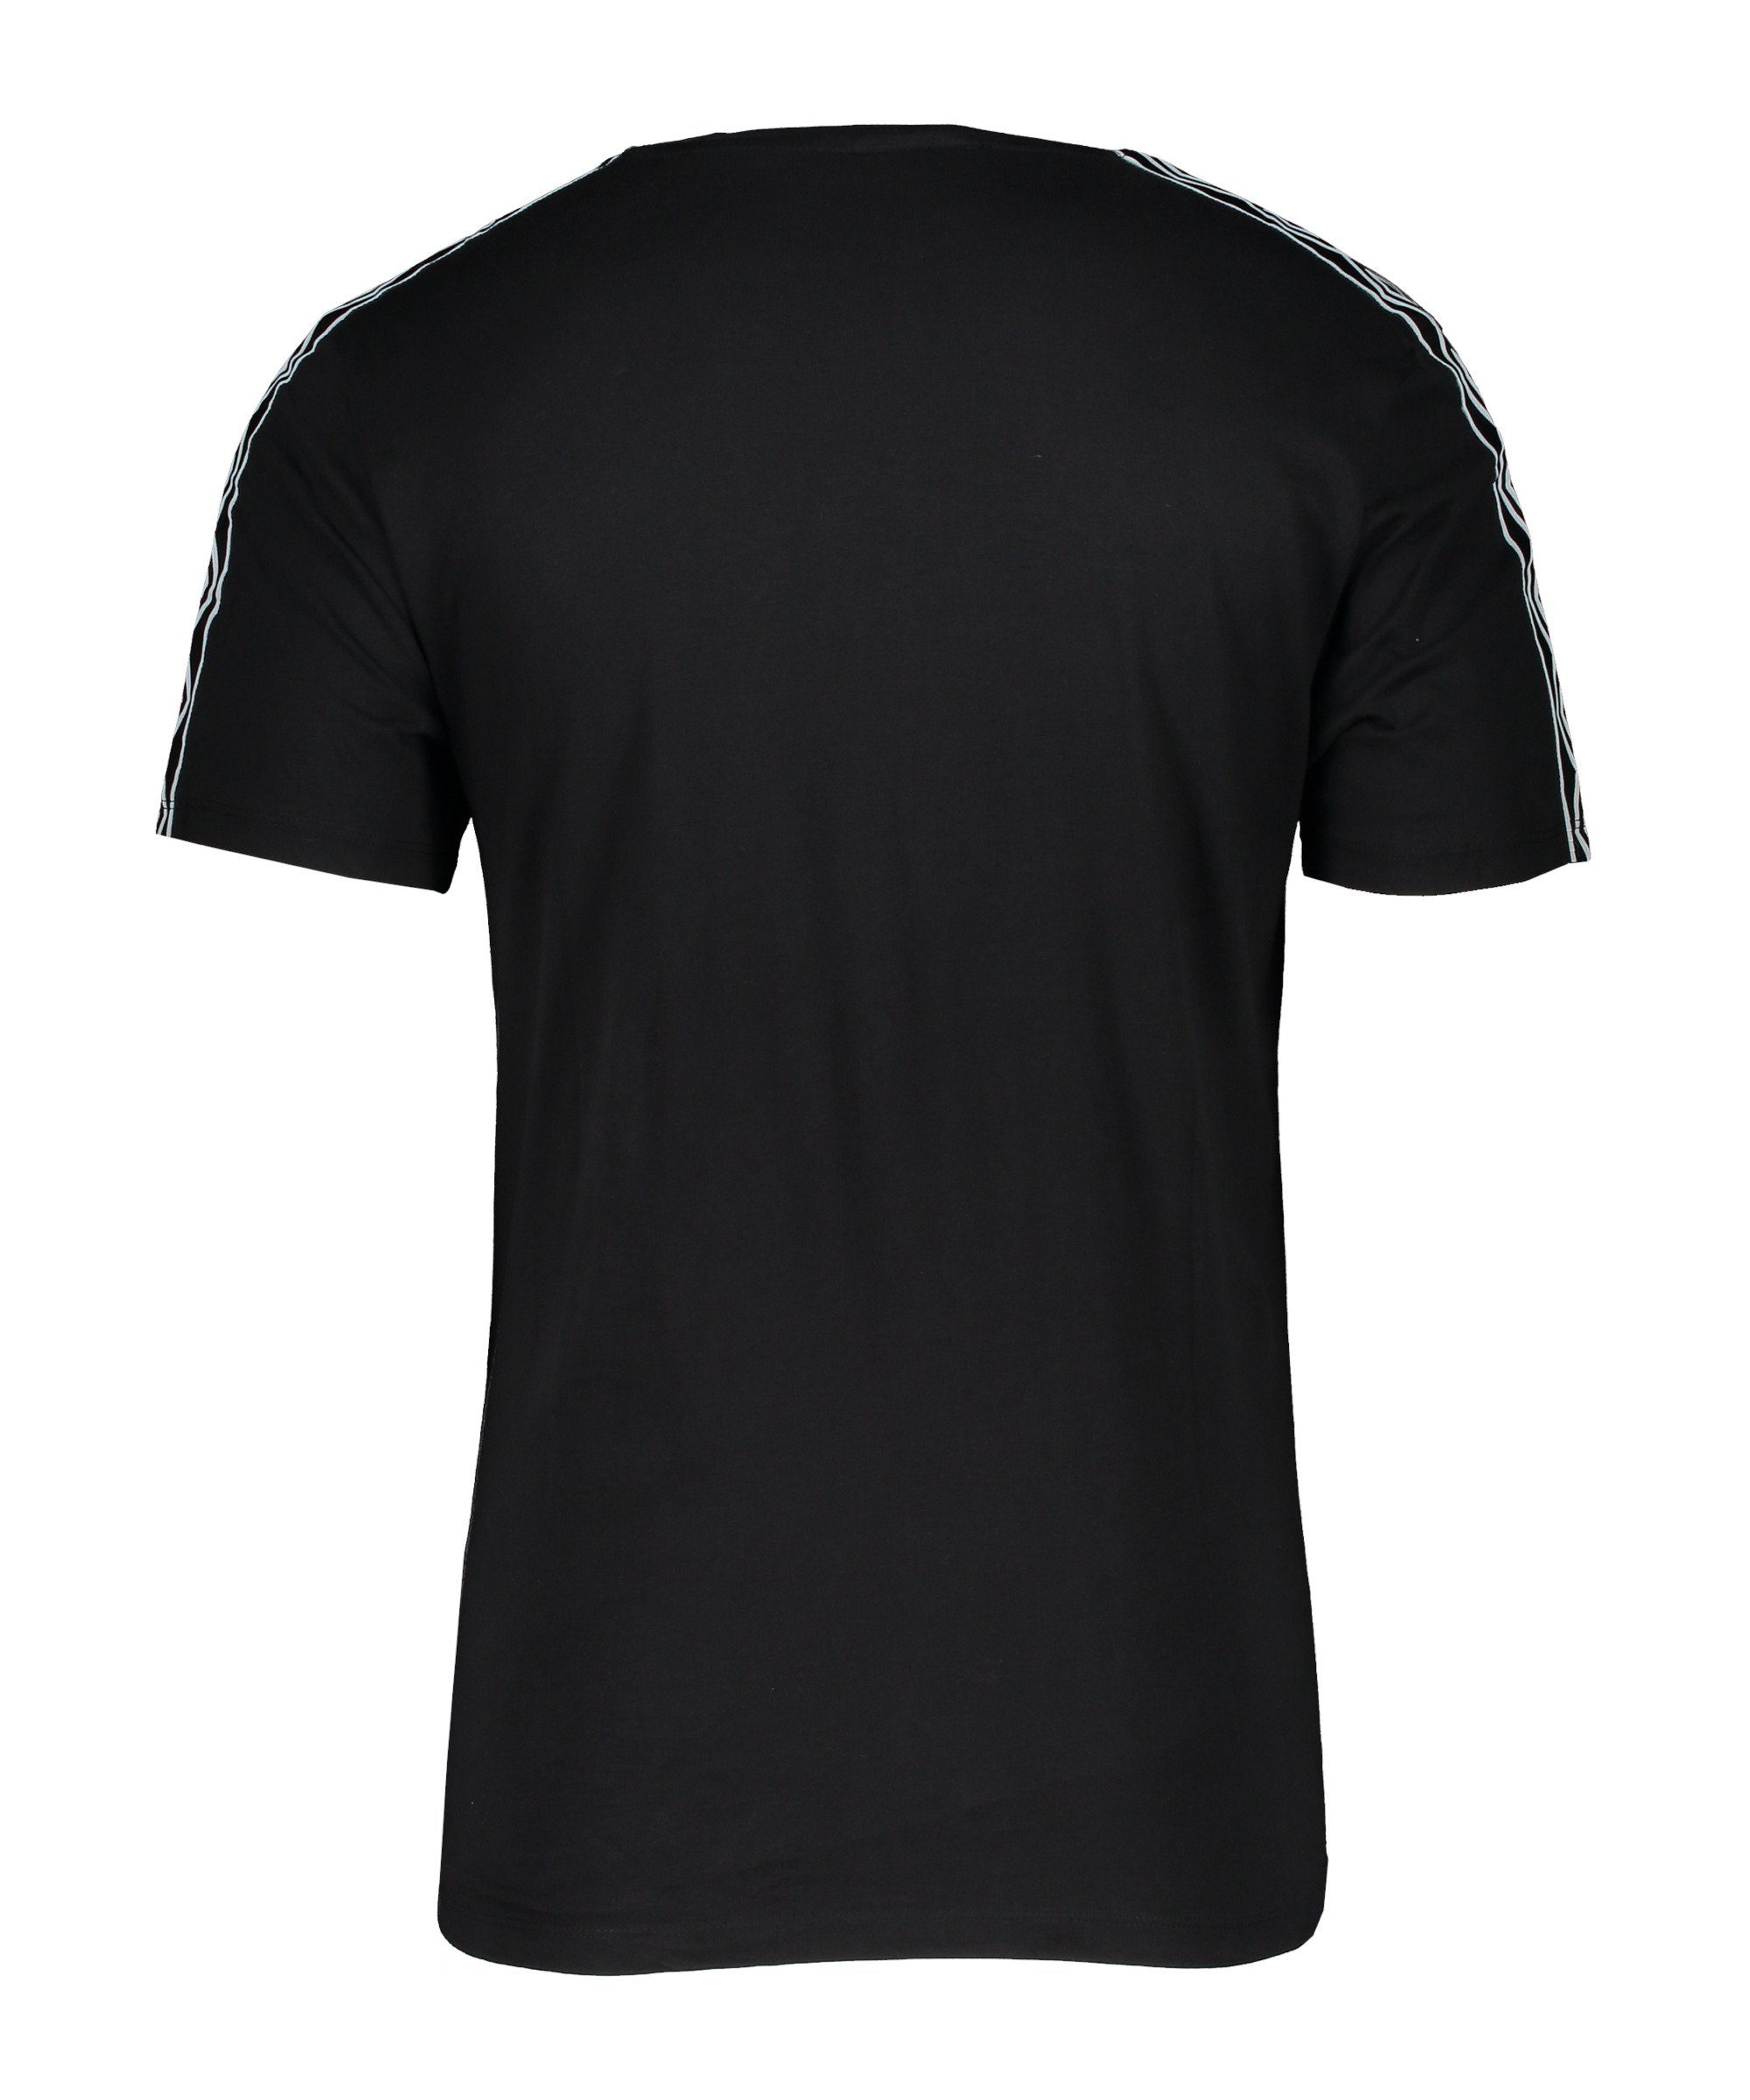 Taped schwarzweiss Umbro T-Shirt default T-Shirt Retro